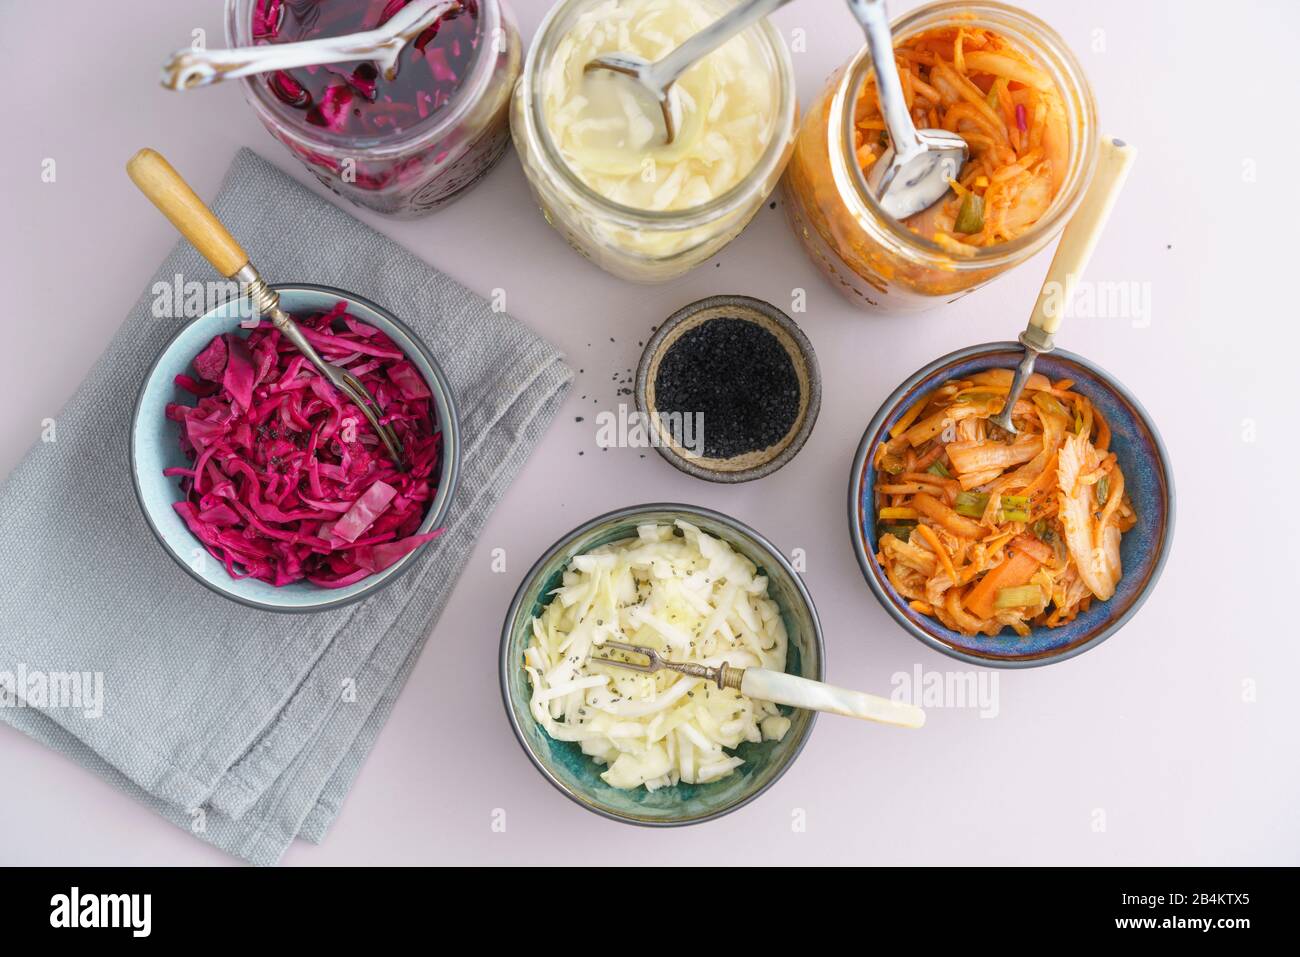 Chou blanc, kimchi et chou rouge fermenté, marinés dans des pots de conservation, servis dans de petits bols Banque D'Images